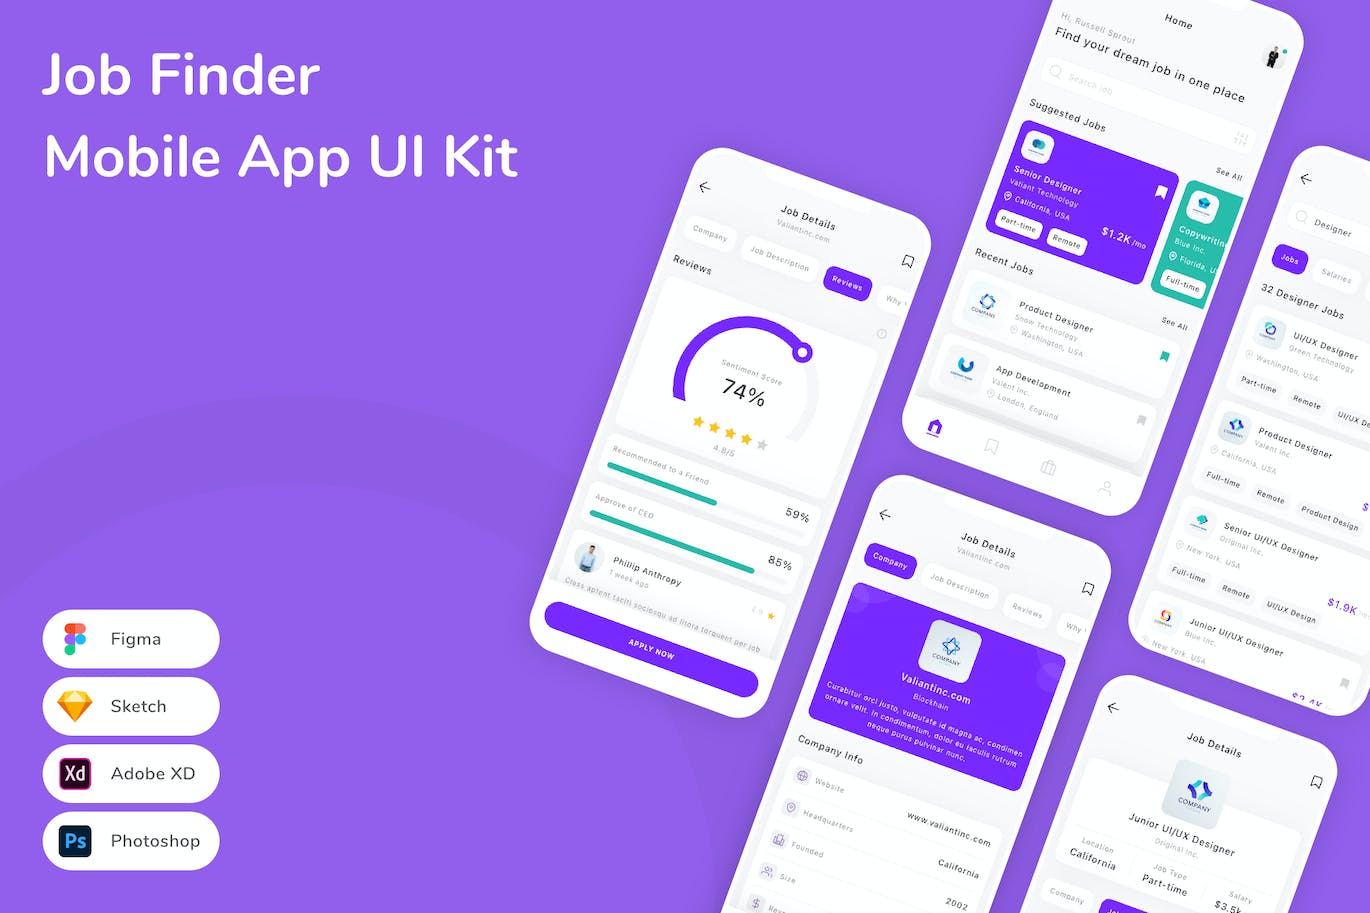 求职找工作App应用程序UI工具包素材 Job Finder Mobile App UI Kit APP UI 第1张